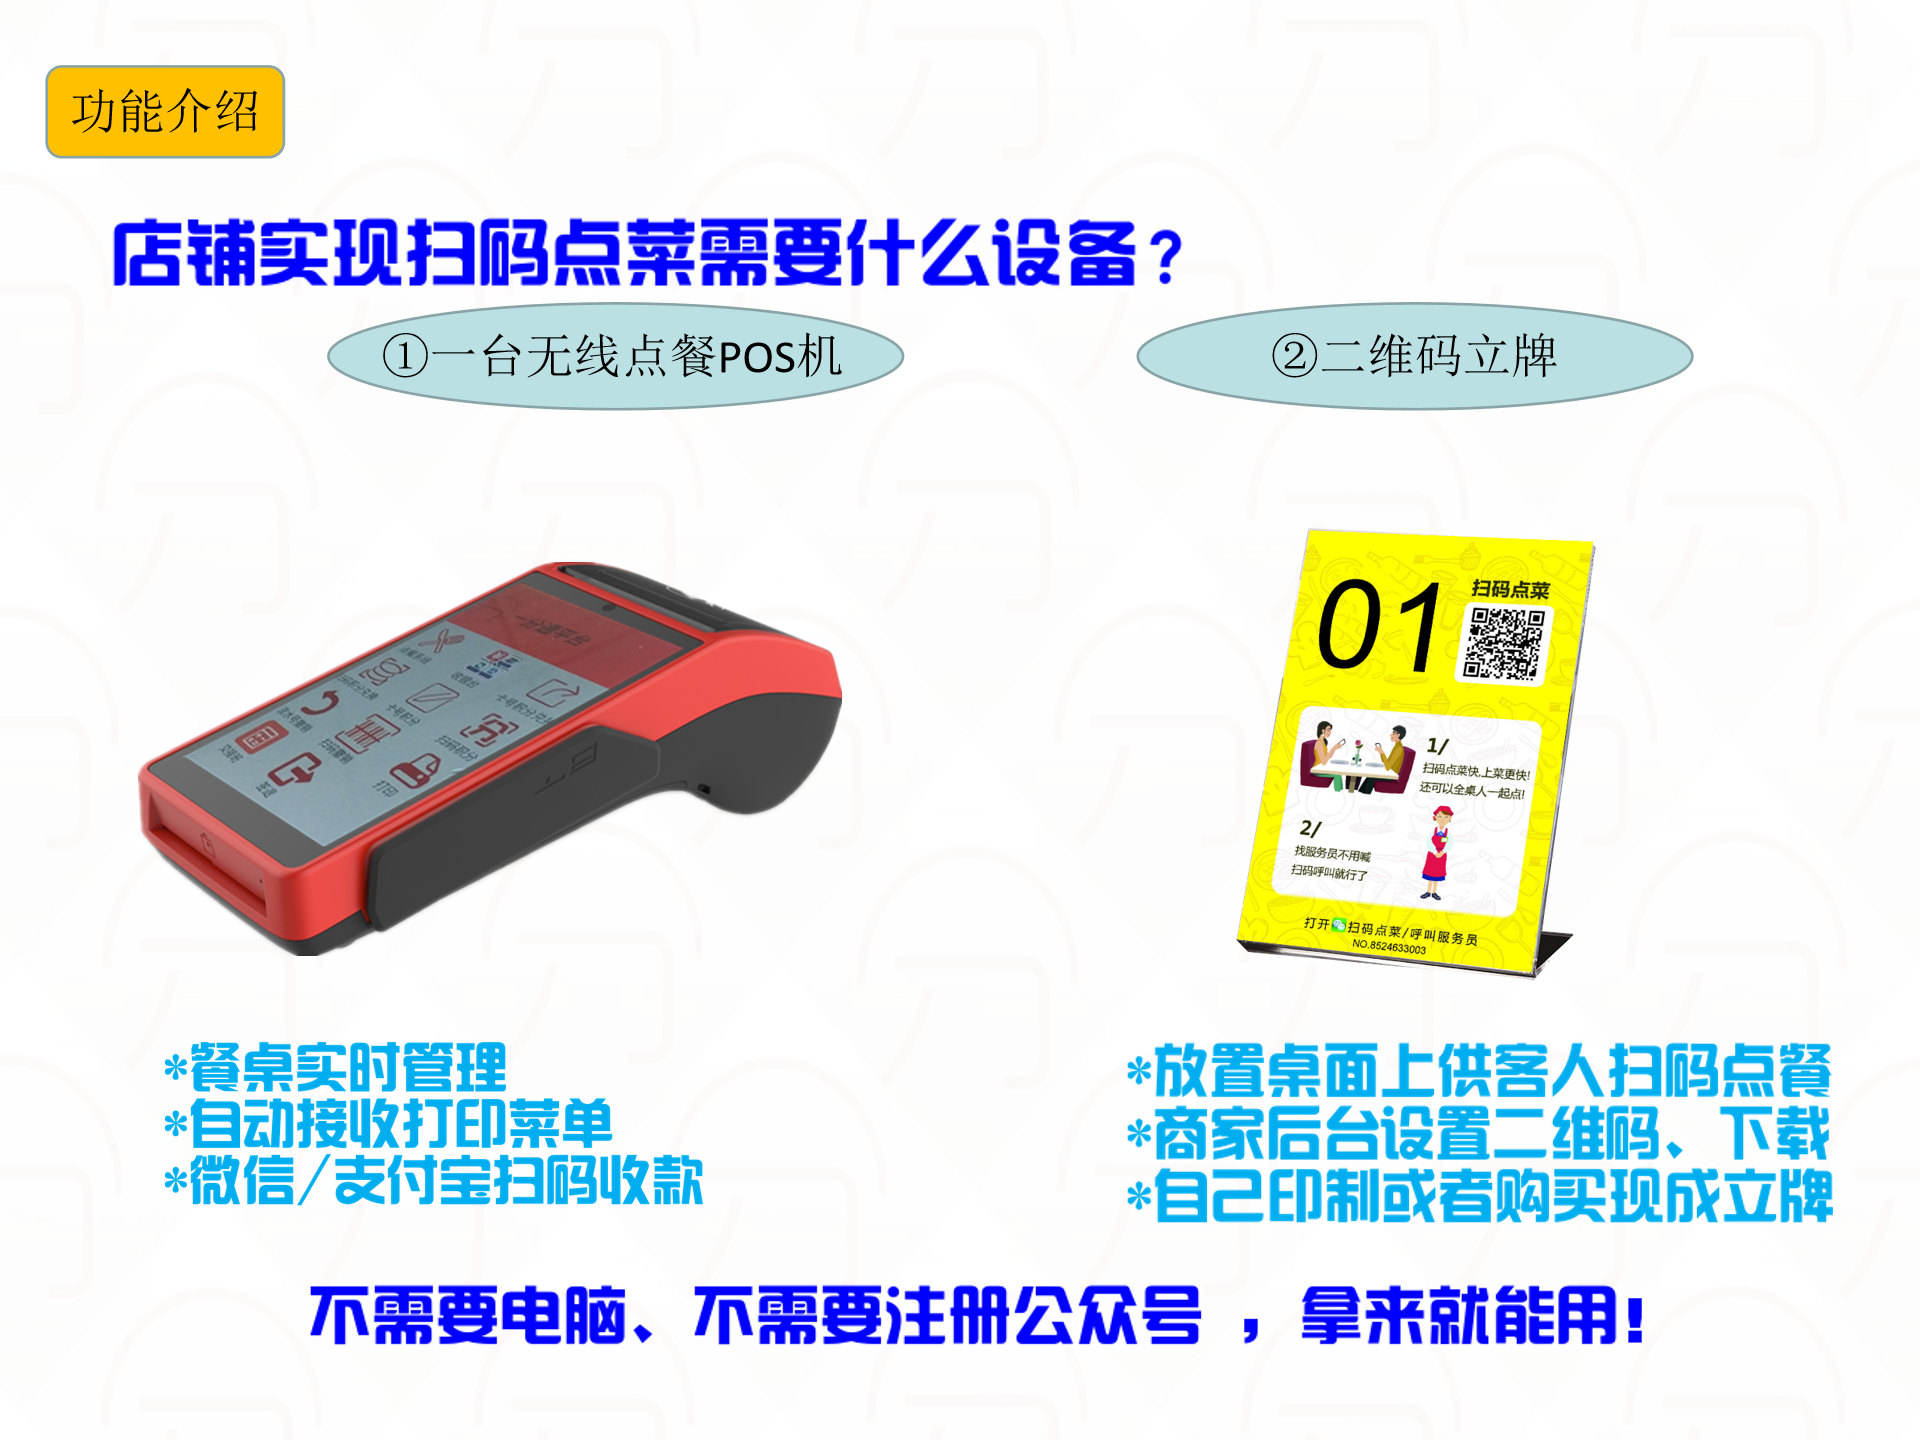 我们推荐外卖配送系统_ 外卖配送系统管理数据相关-深圳市中贤在线技术有限公司